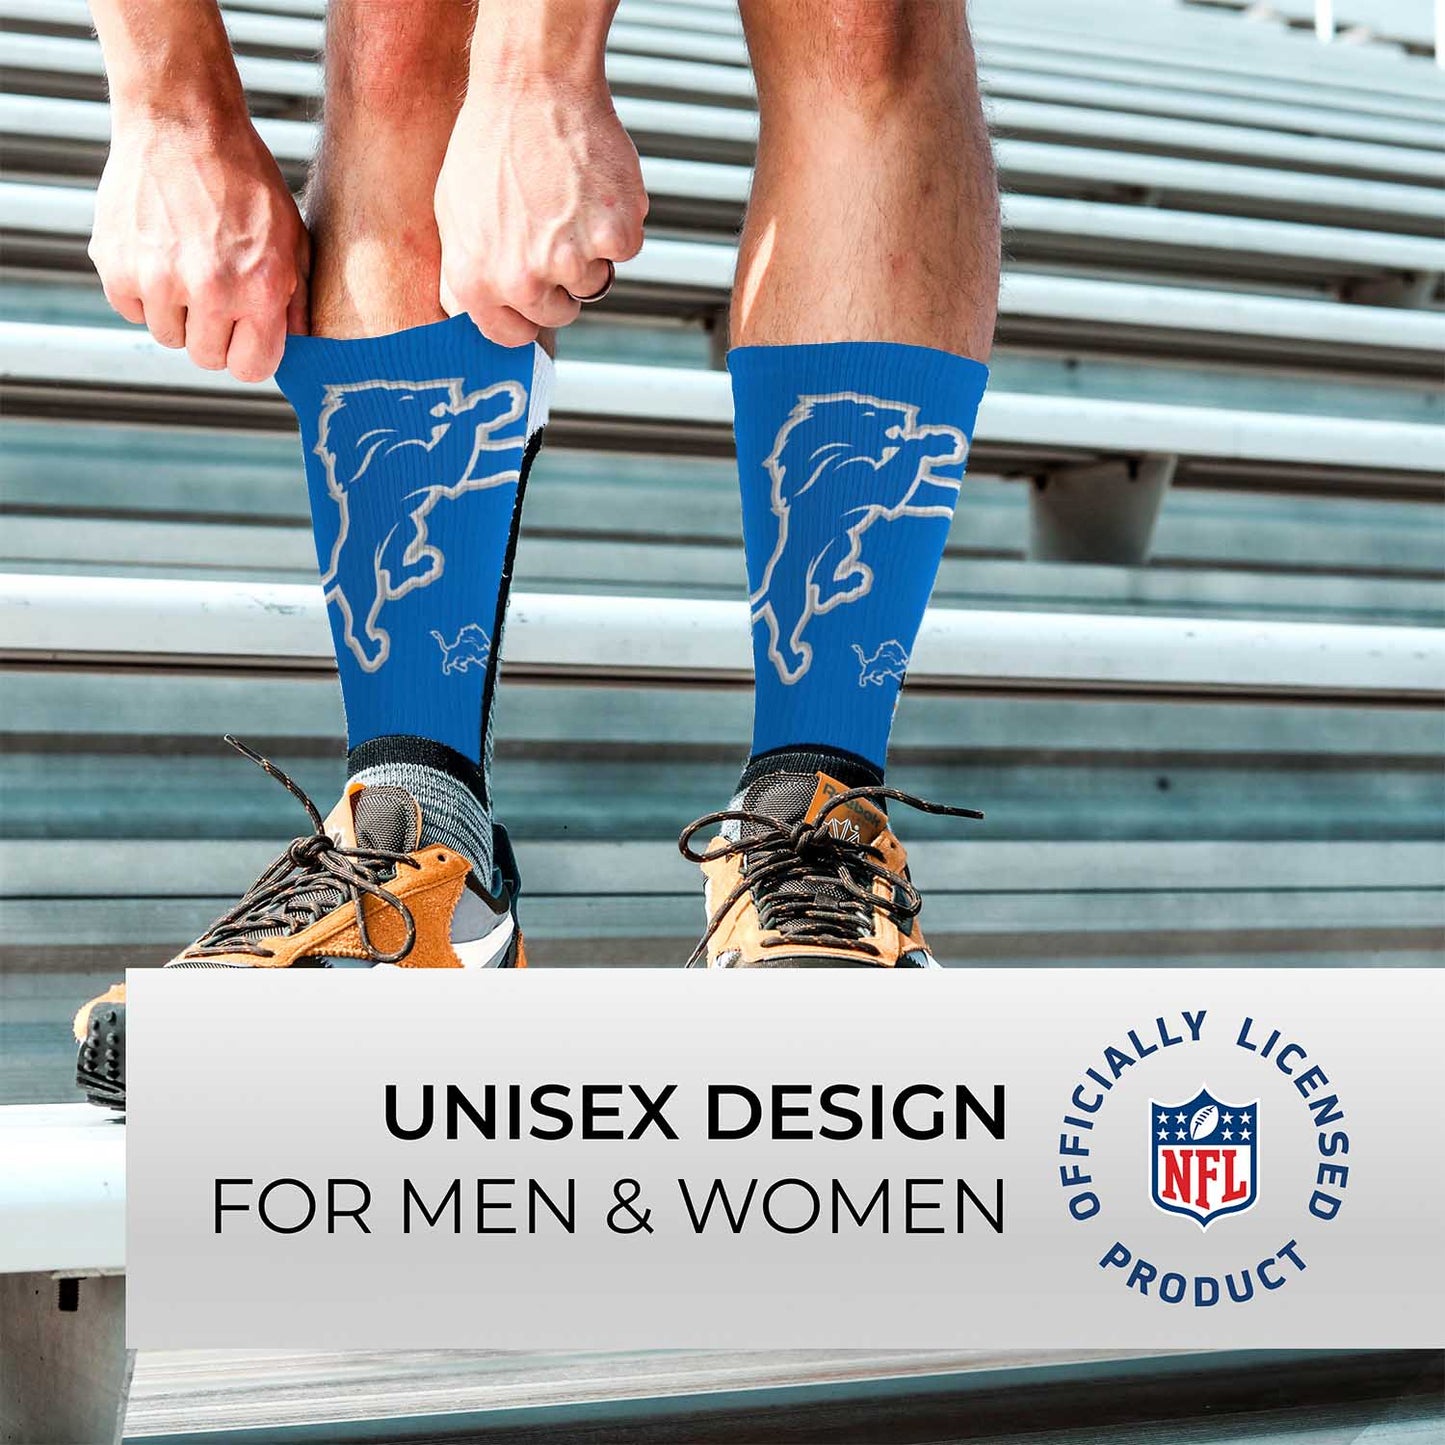 Detroit Lions NFL Adult Curve Socks - Blue